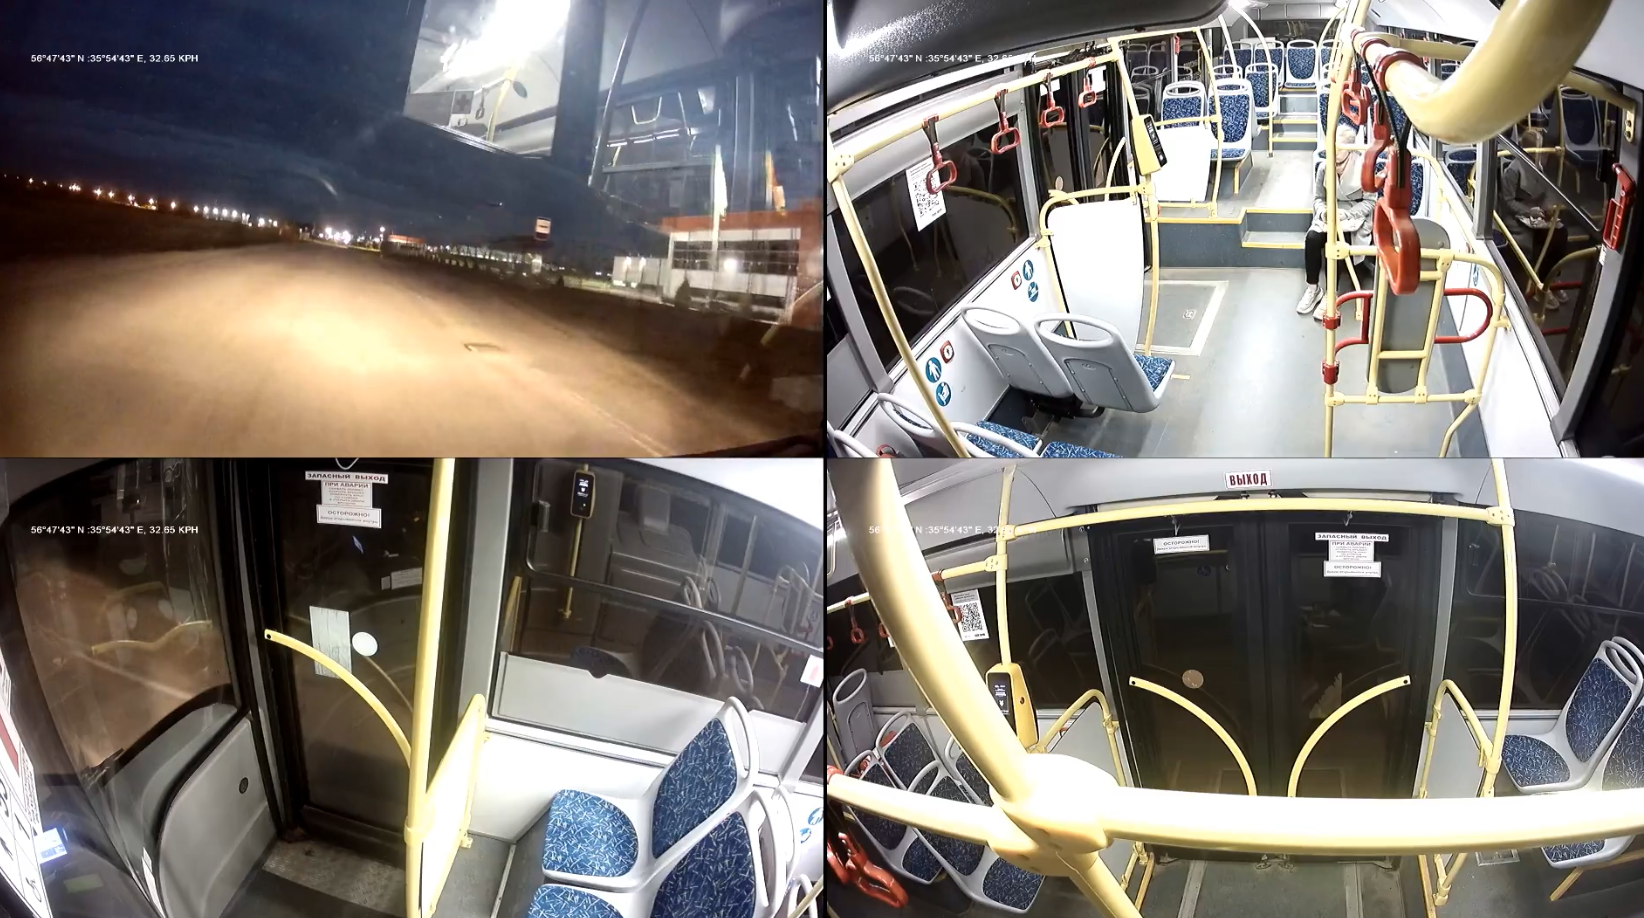 Камеры общественного транспорта. Видеокамера в автобусе. Транспорт Верхневолжья. Камеры в автобусах Верхневолжья. Камеры в автобусах Твери.